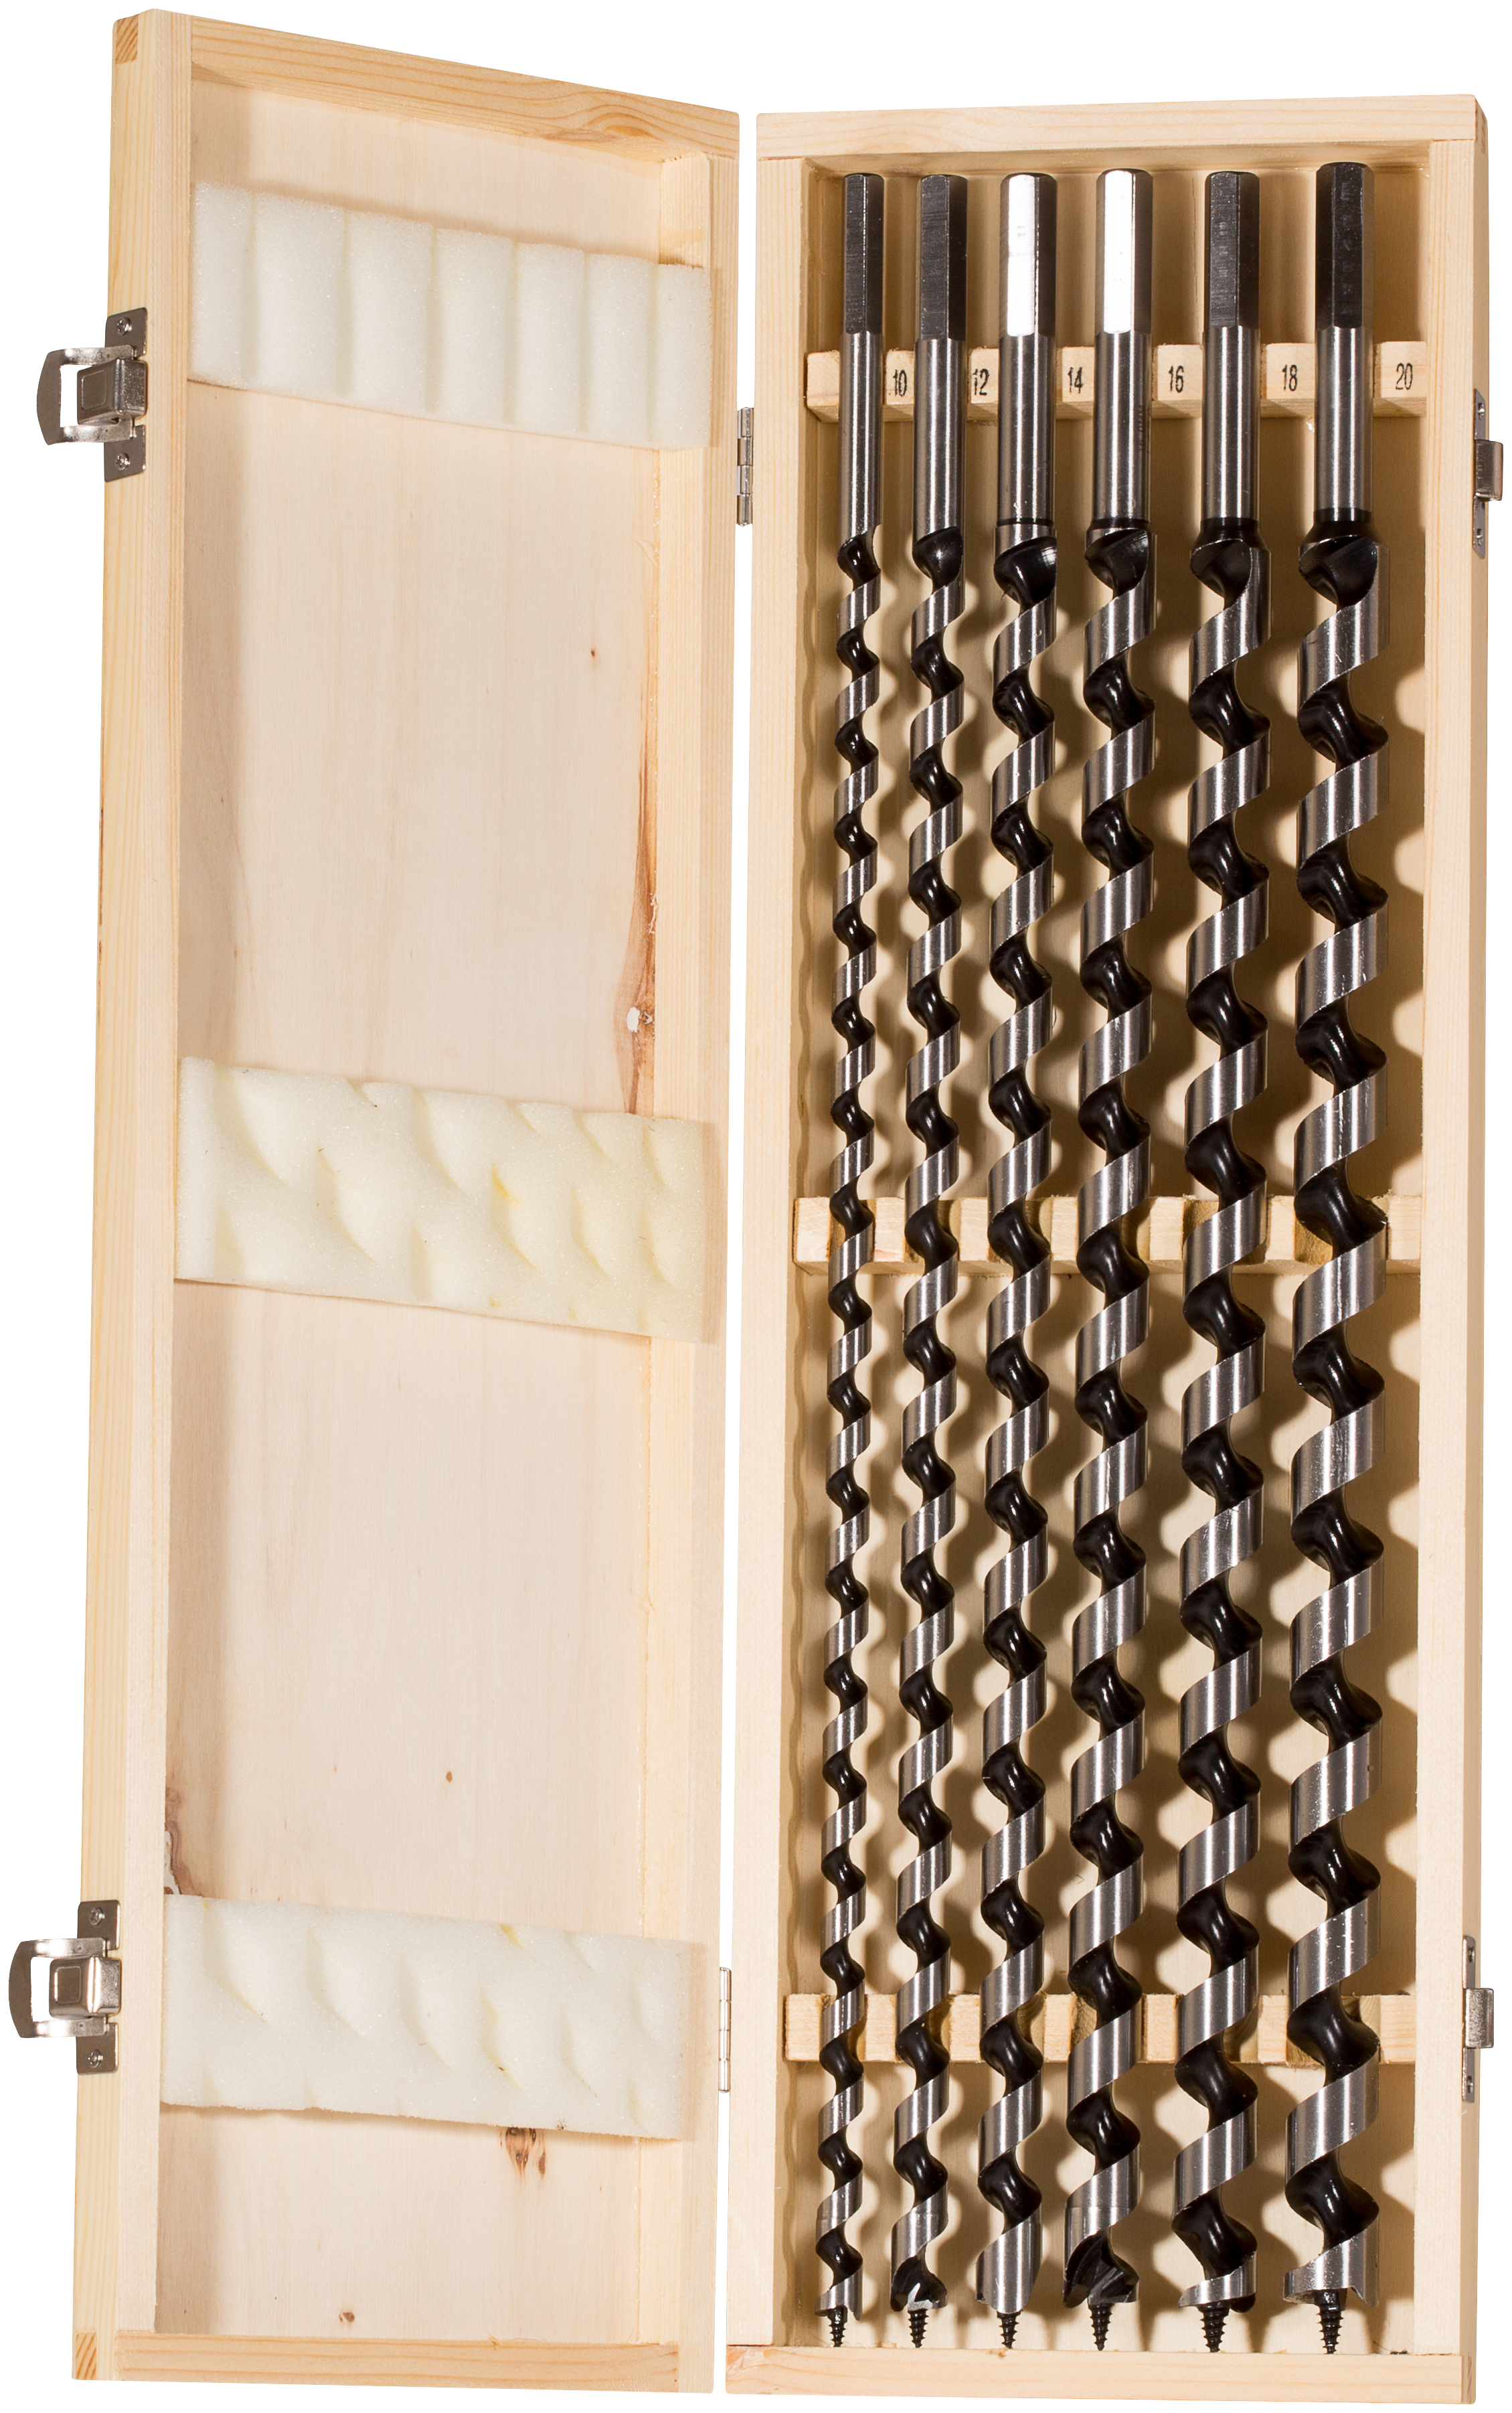 fischer Set punte trapano legno Lewis 460 (10-20mm) 6 pezzi (6 Pz.) Punta D-WL professionale in acciaio per legno con dispositivo di centraggio tipo Lewis.